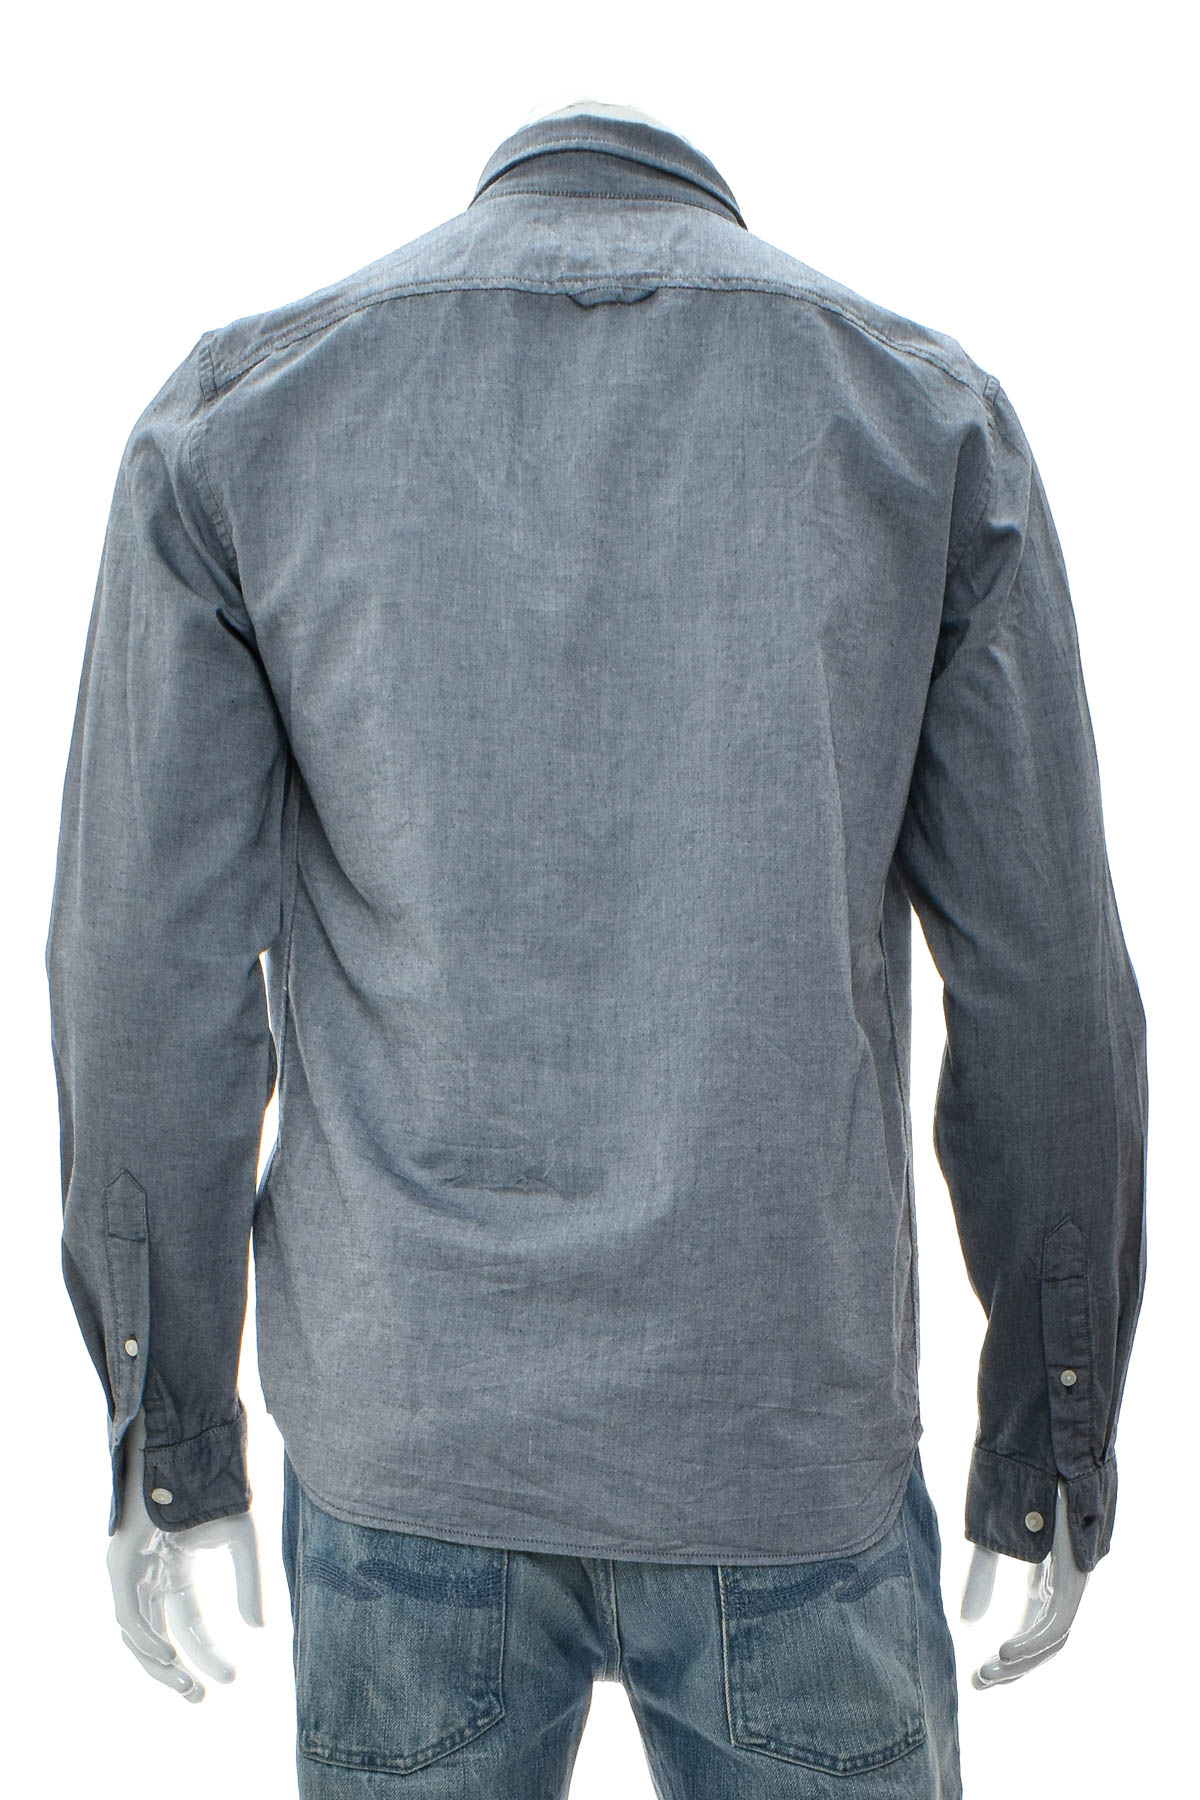 Men's shirt - Timberland - 1